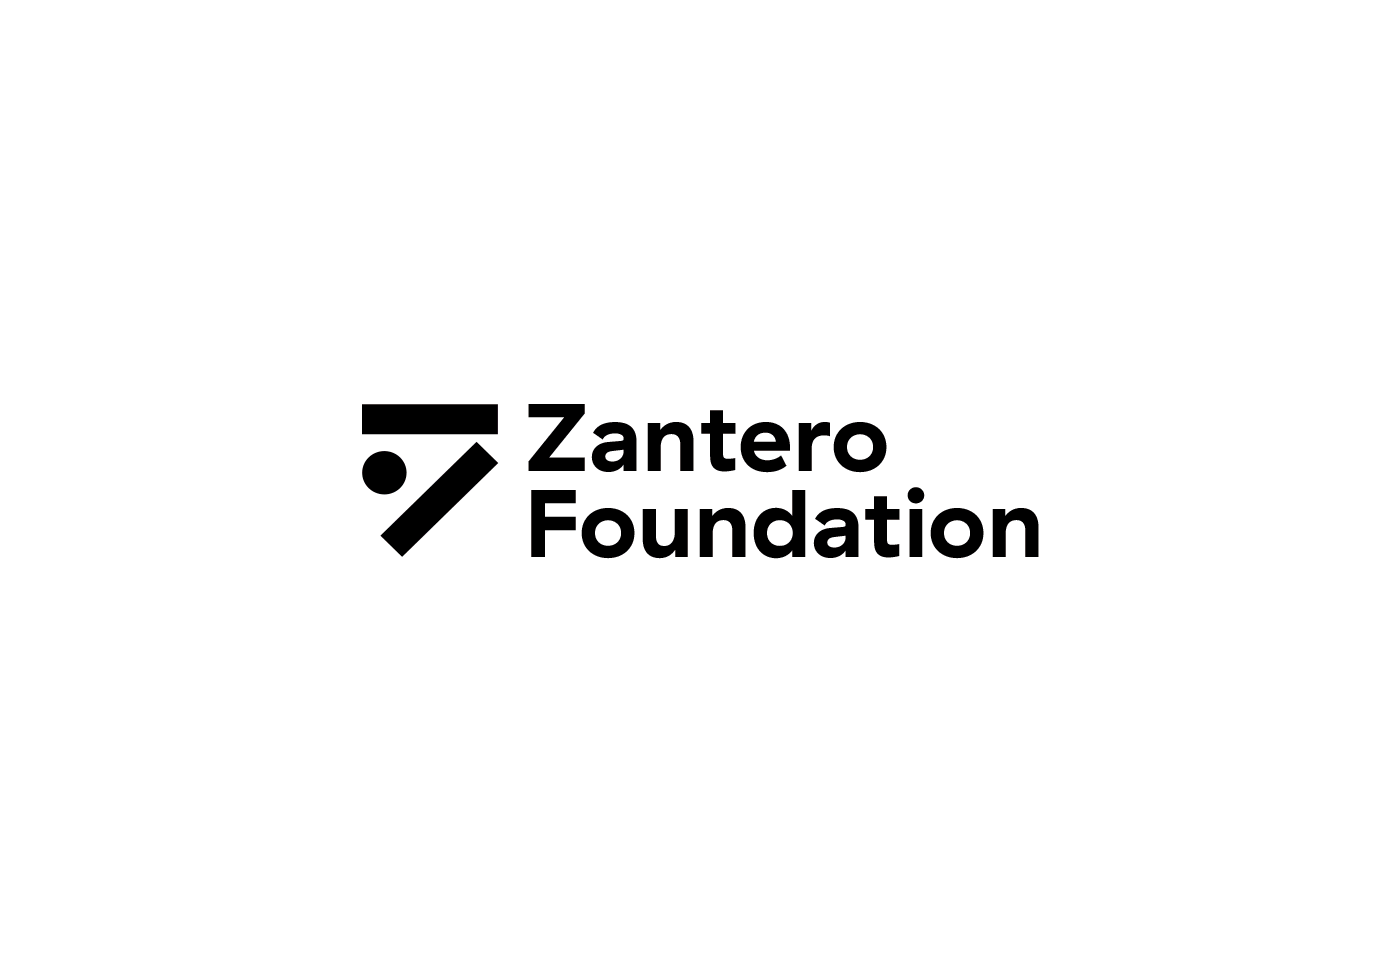 Corporate Branding for Zantero Foundation in Amsterdam